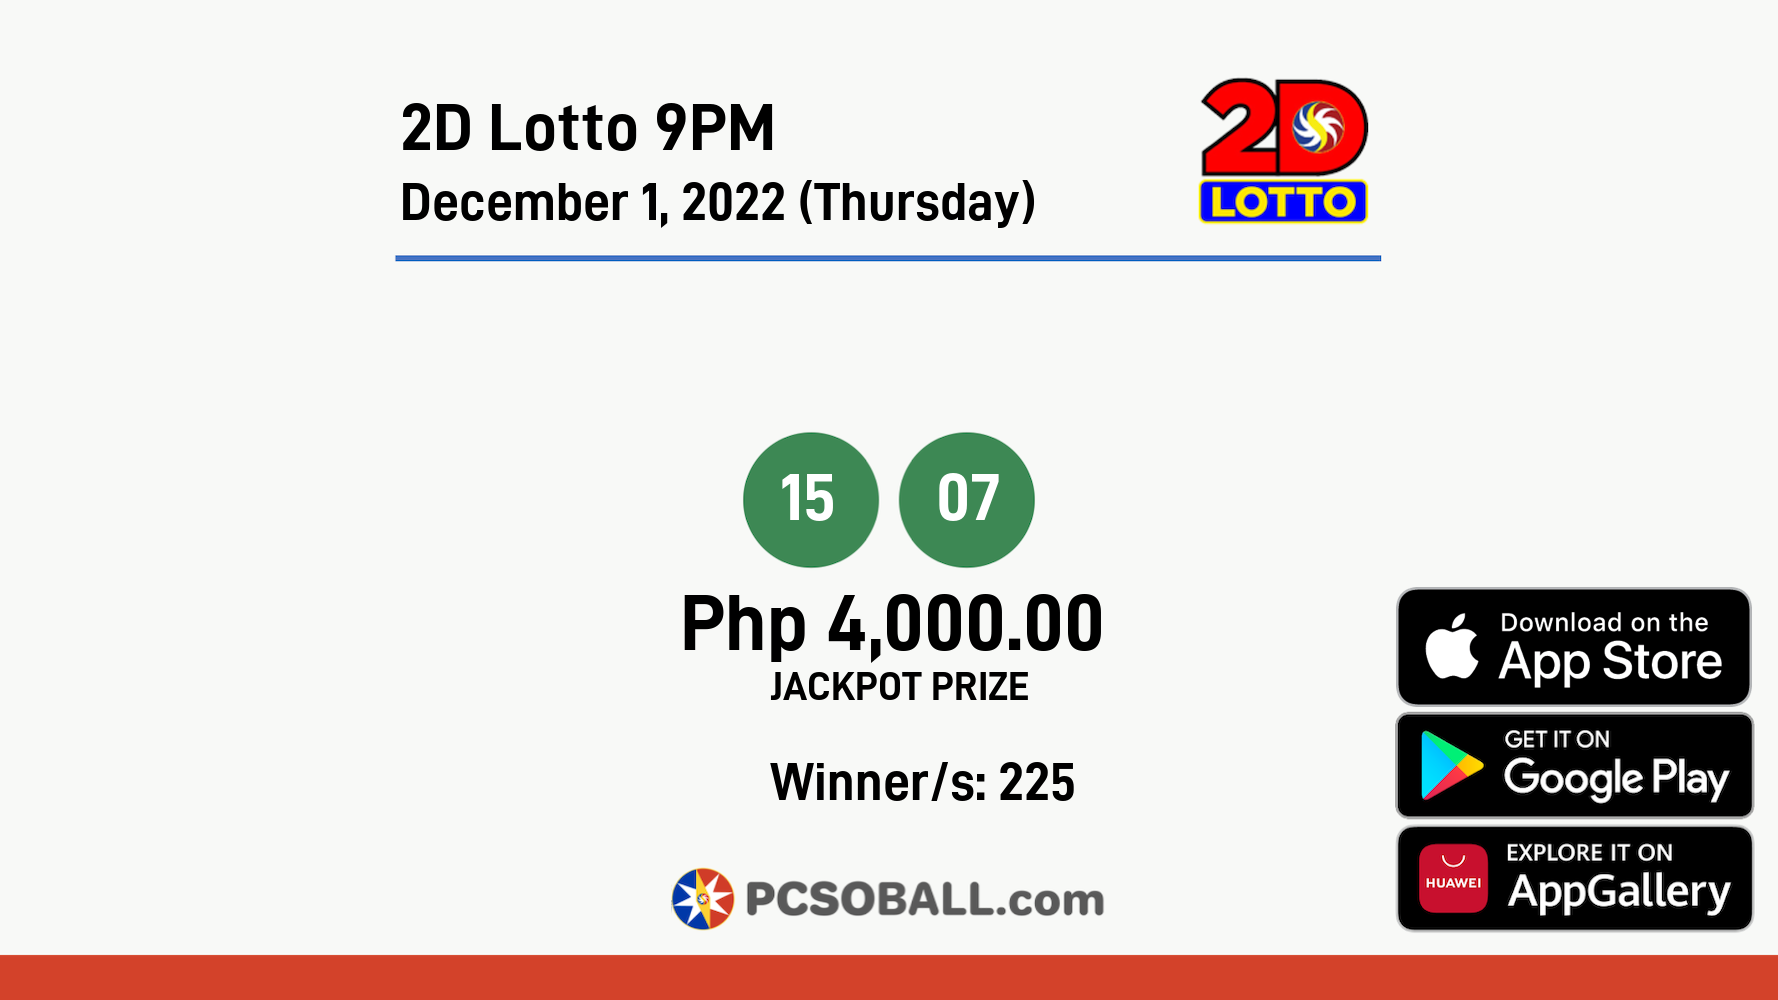 2D Lotto 9PM December 1, 2022 (Thursday) Result